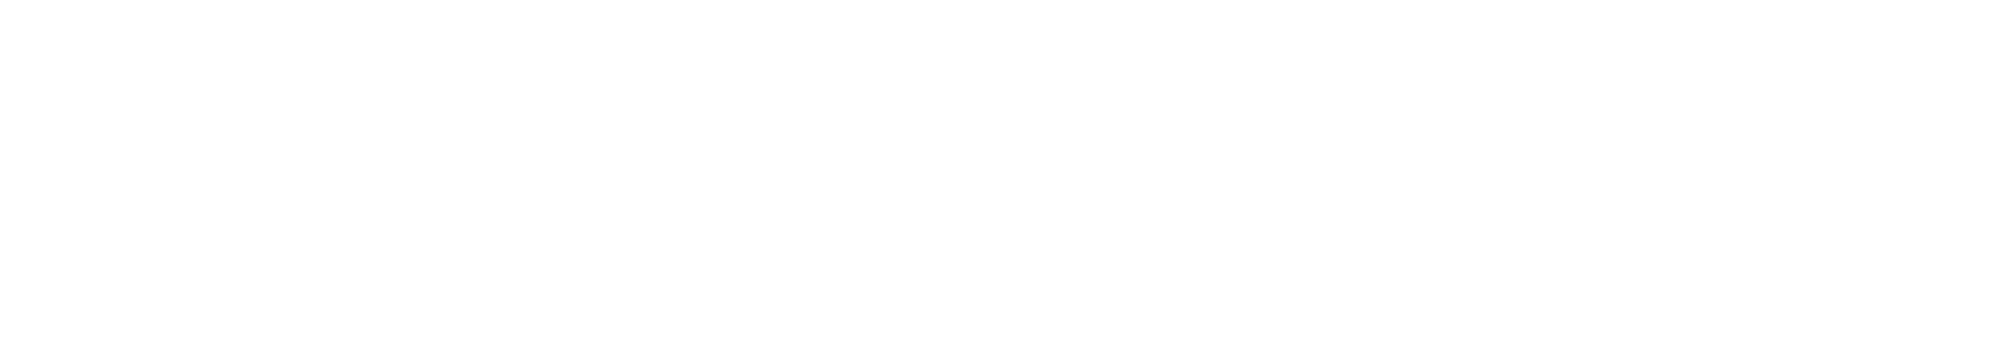 _bnr_company